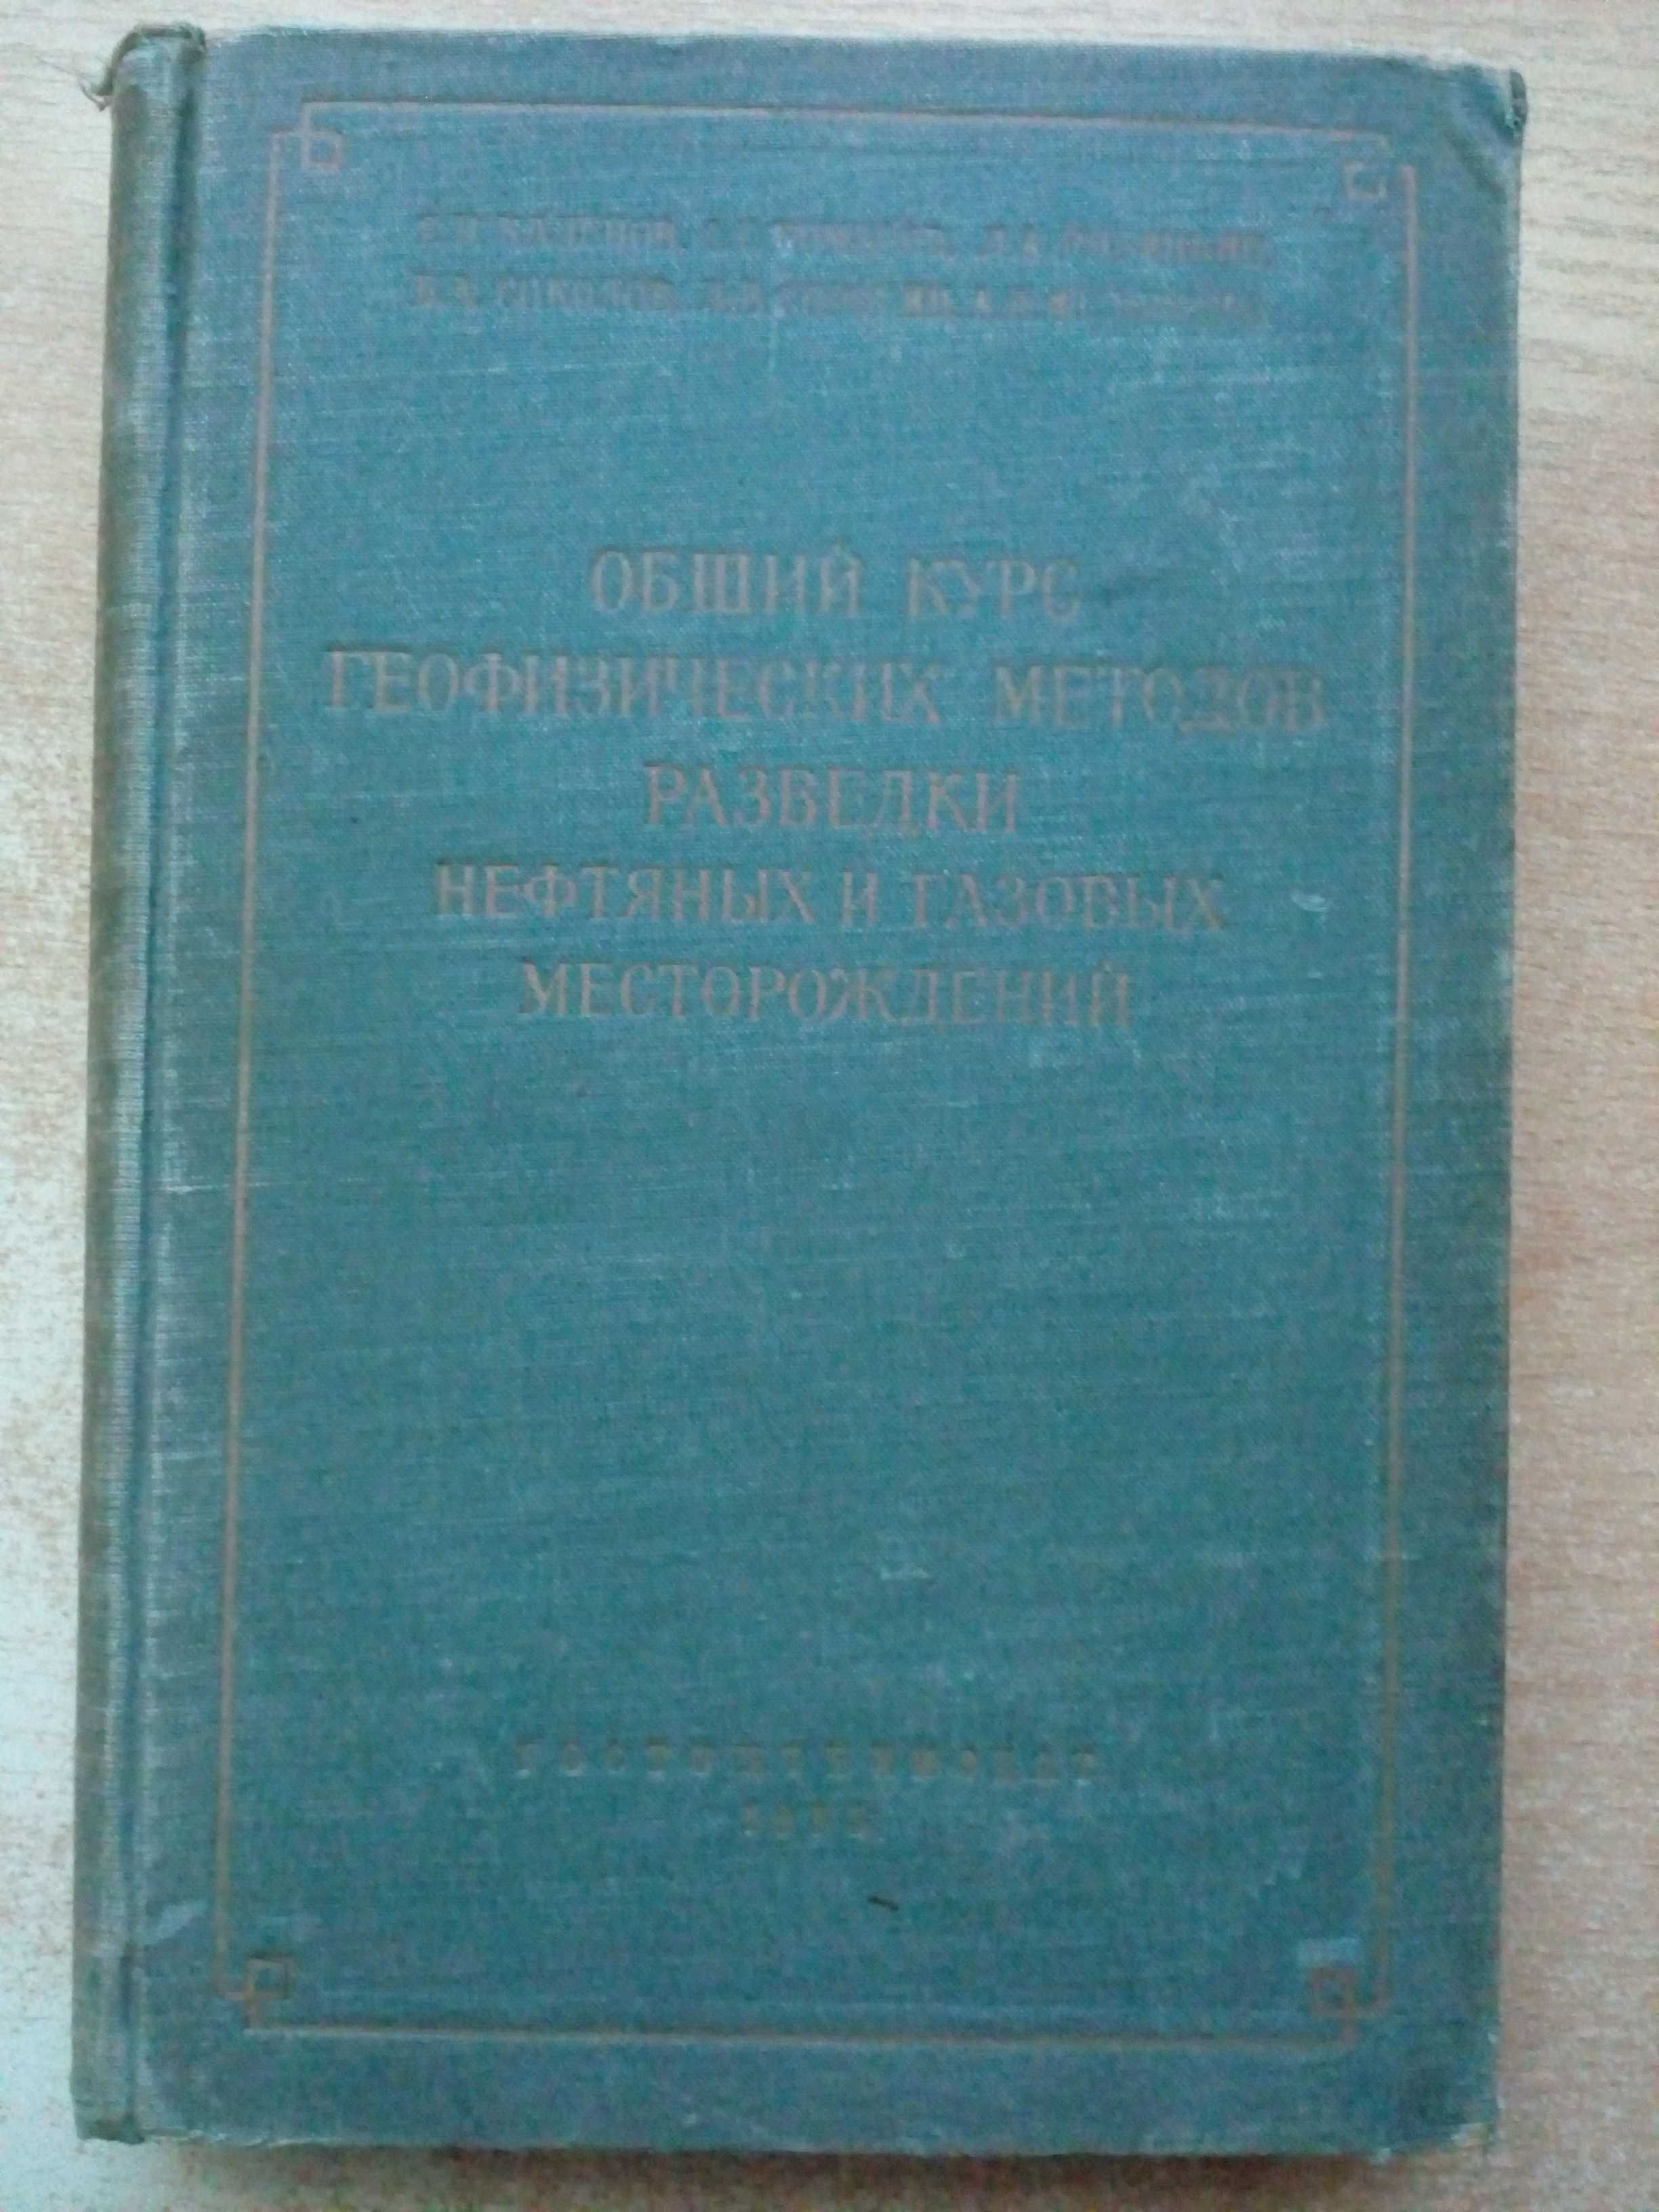 "Общий курс геофизических методов разведки"1954г.